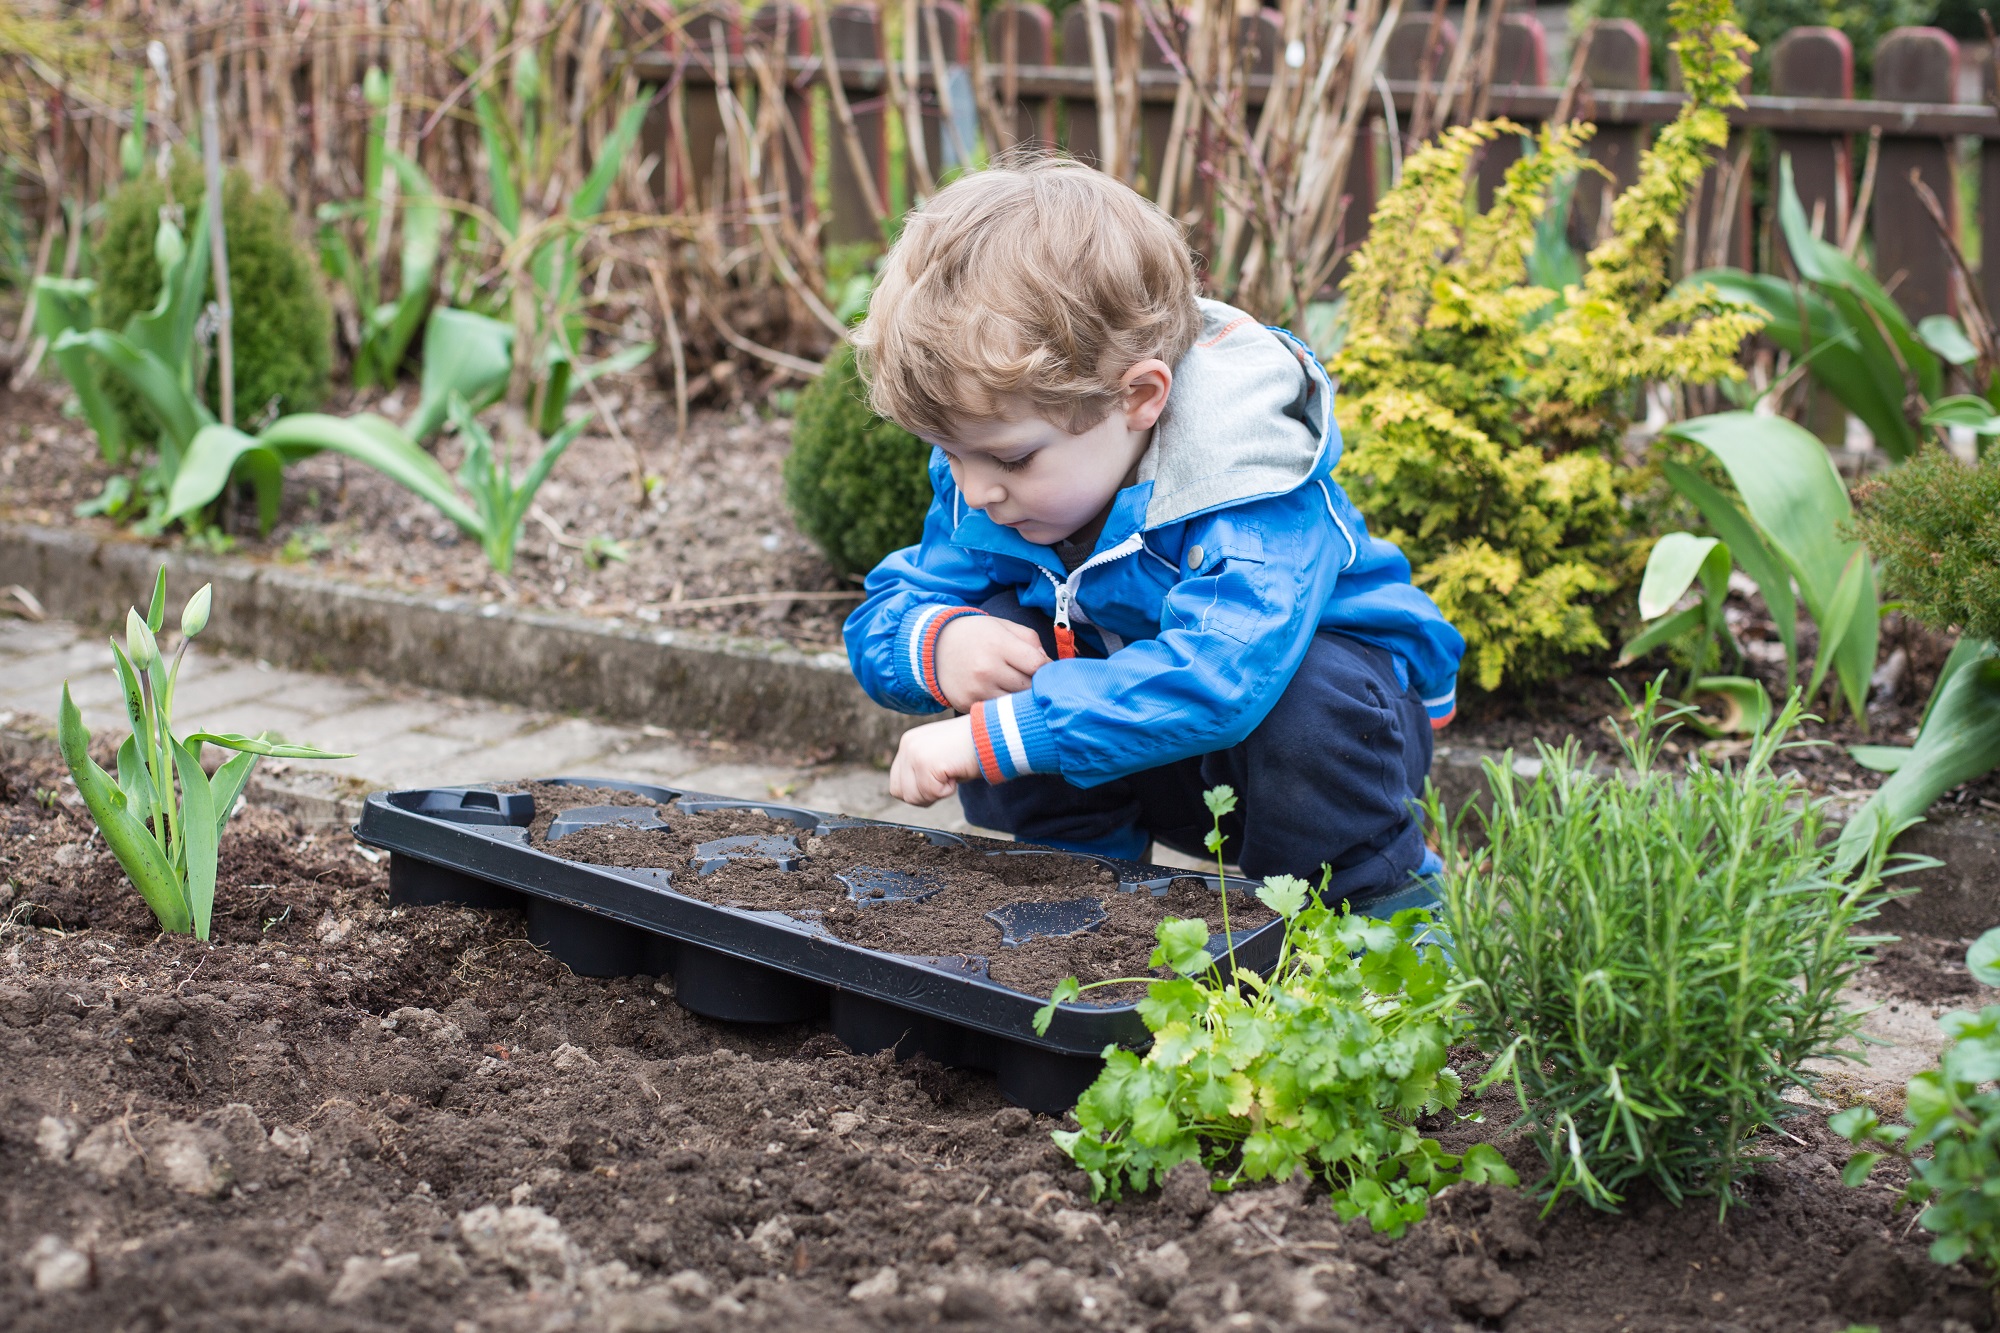 Календарь садовода и огородника апрель. Источник фото: Shutterstock